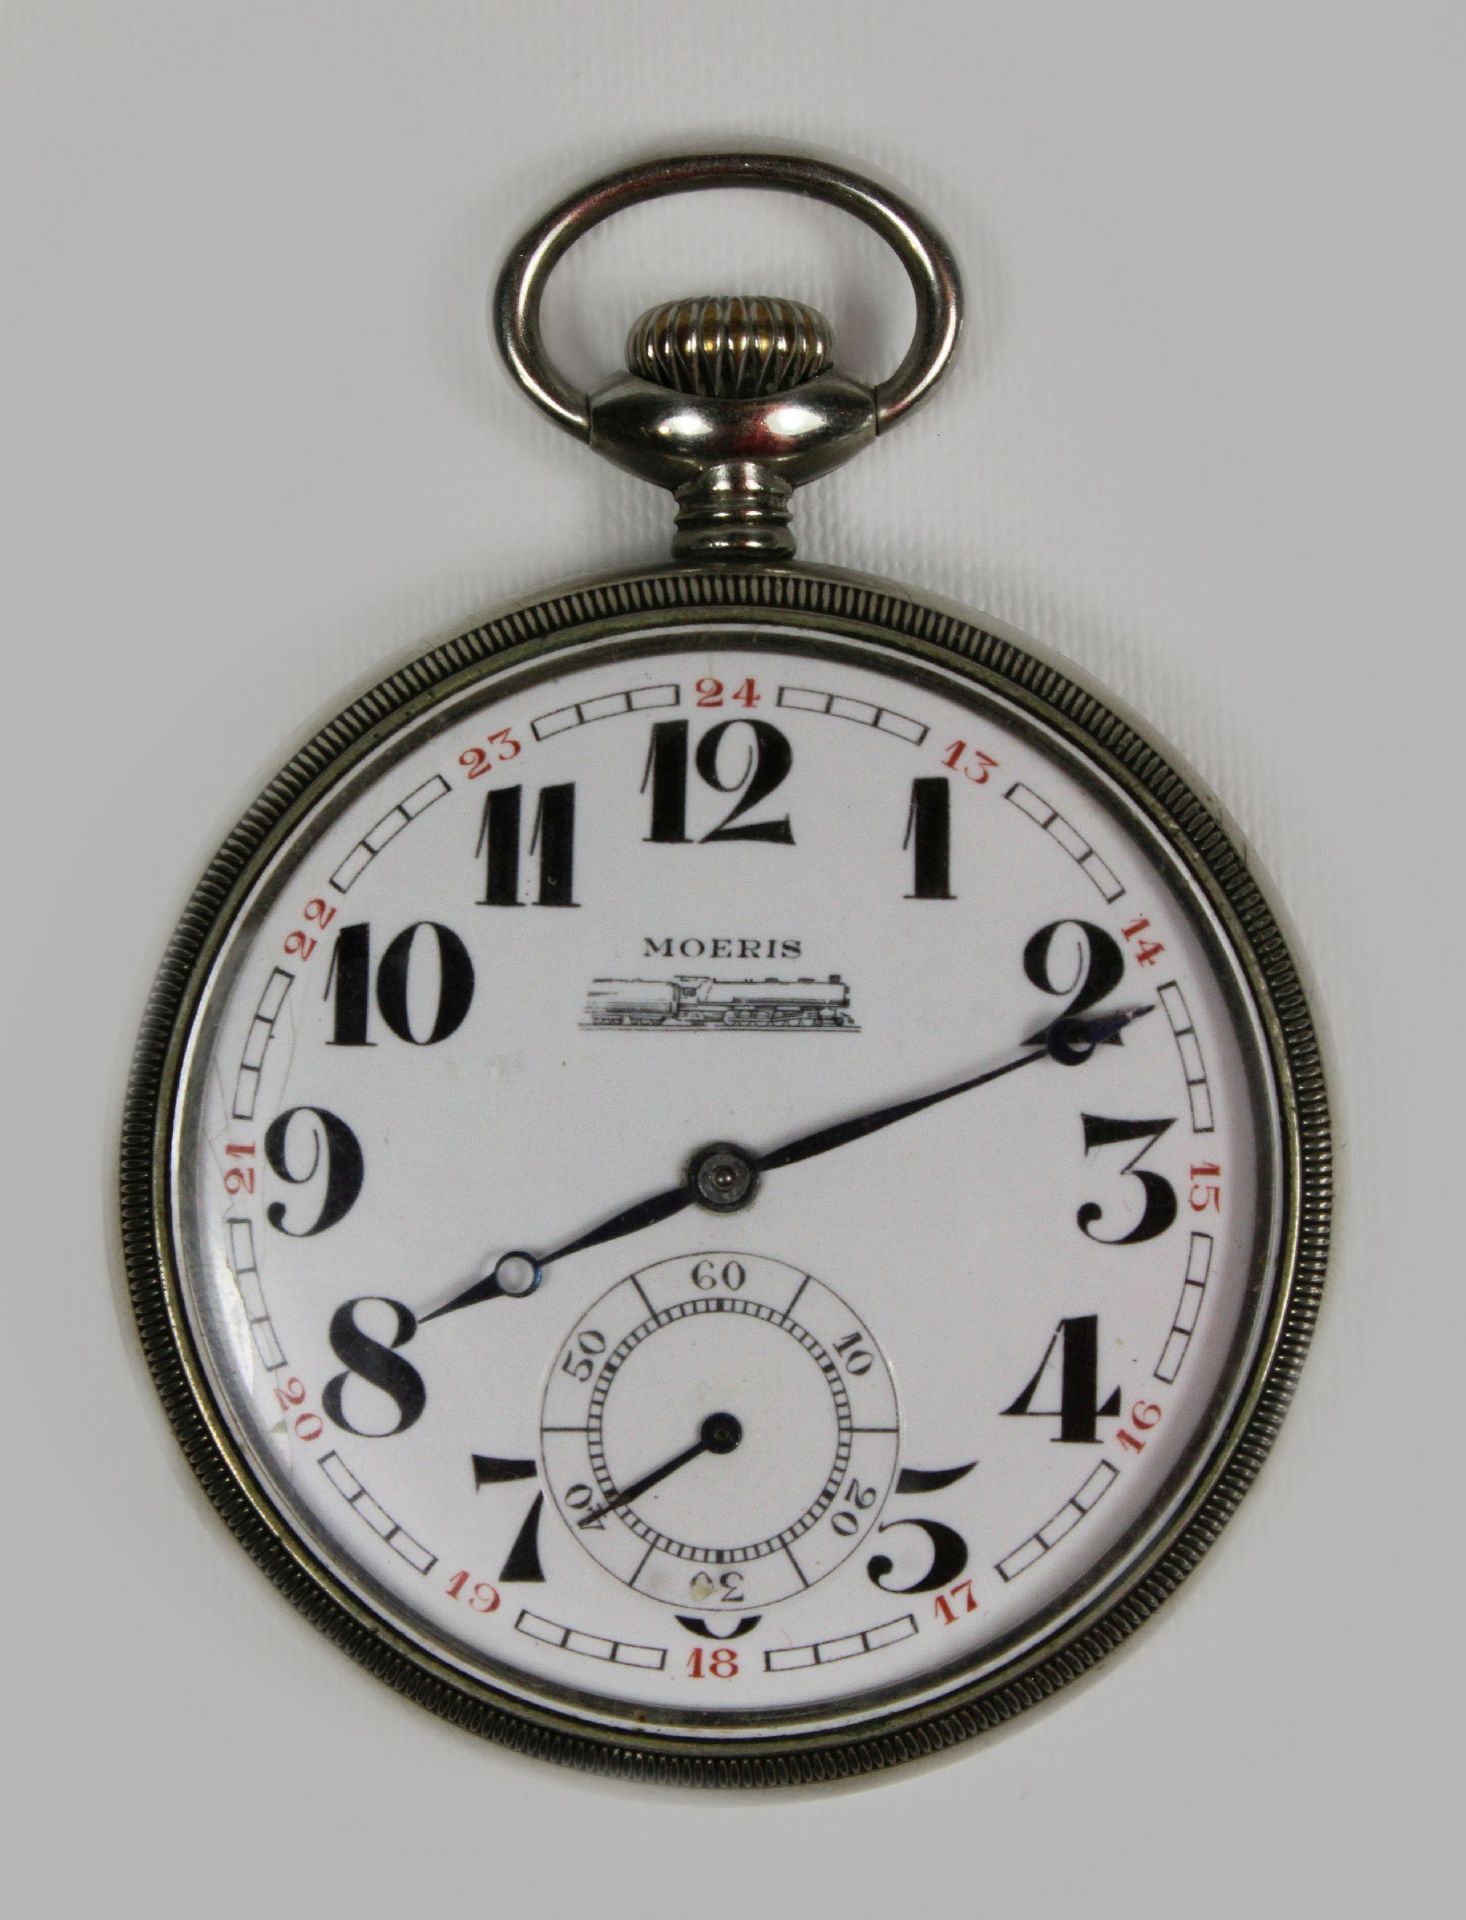 Moeris Eisenbahneruhr, um 1900, Schweiz, Nickelgehäuse. Guter Zustand, Uhr läuft.